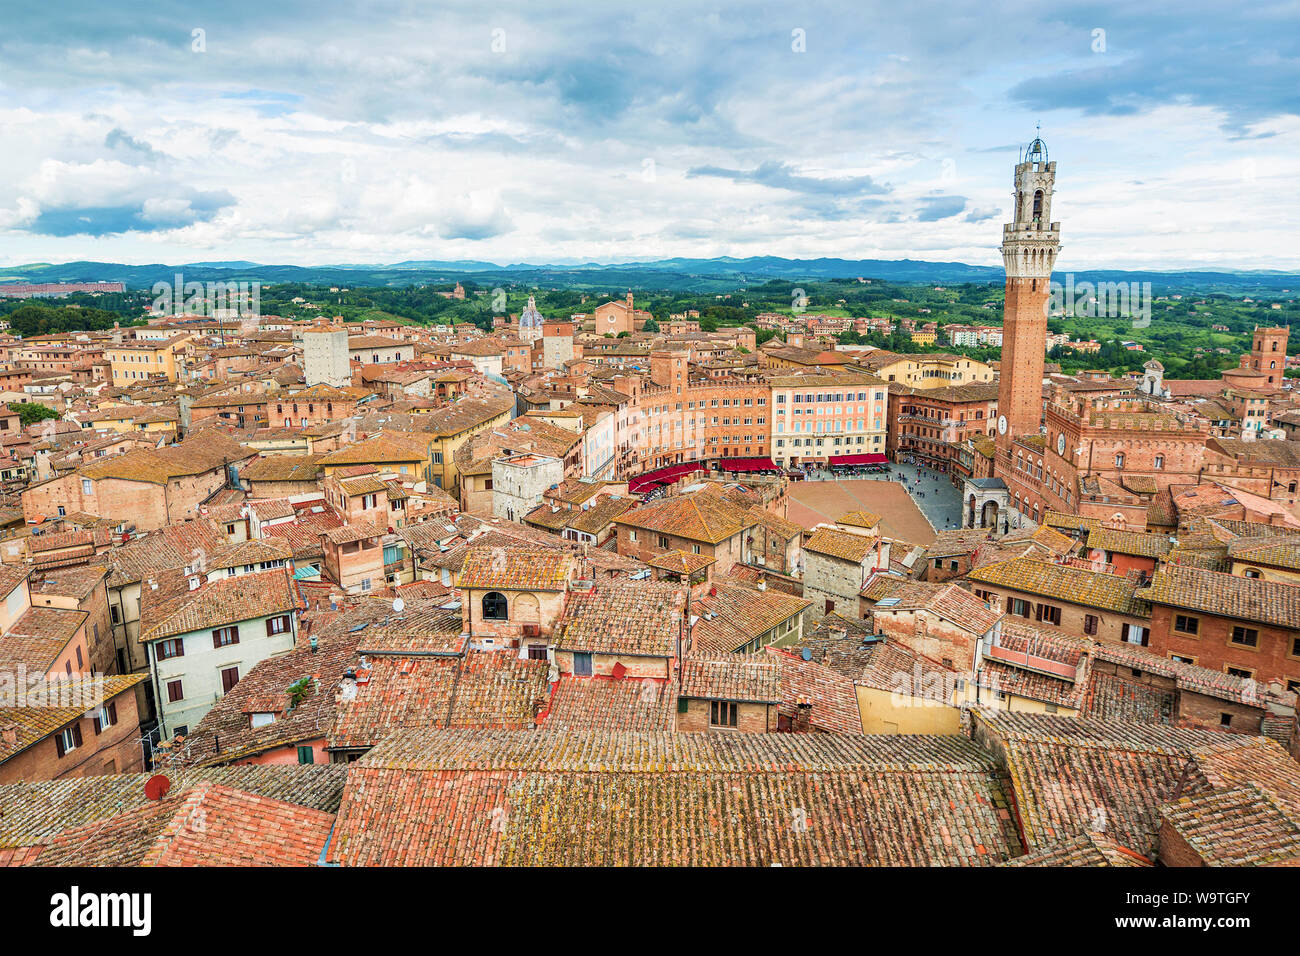 Aerial cityscape, Siena, Tuscany, Italy Stock Photo